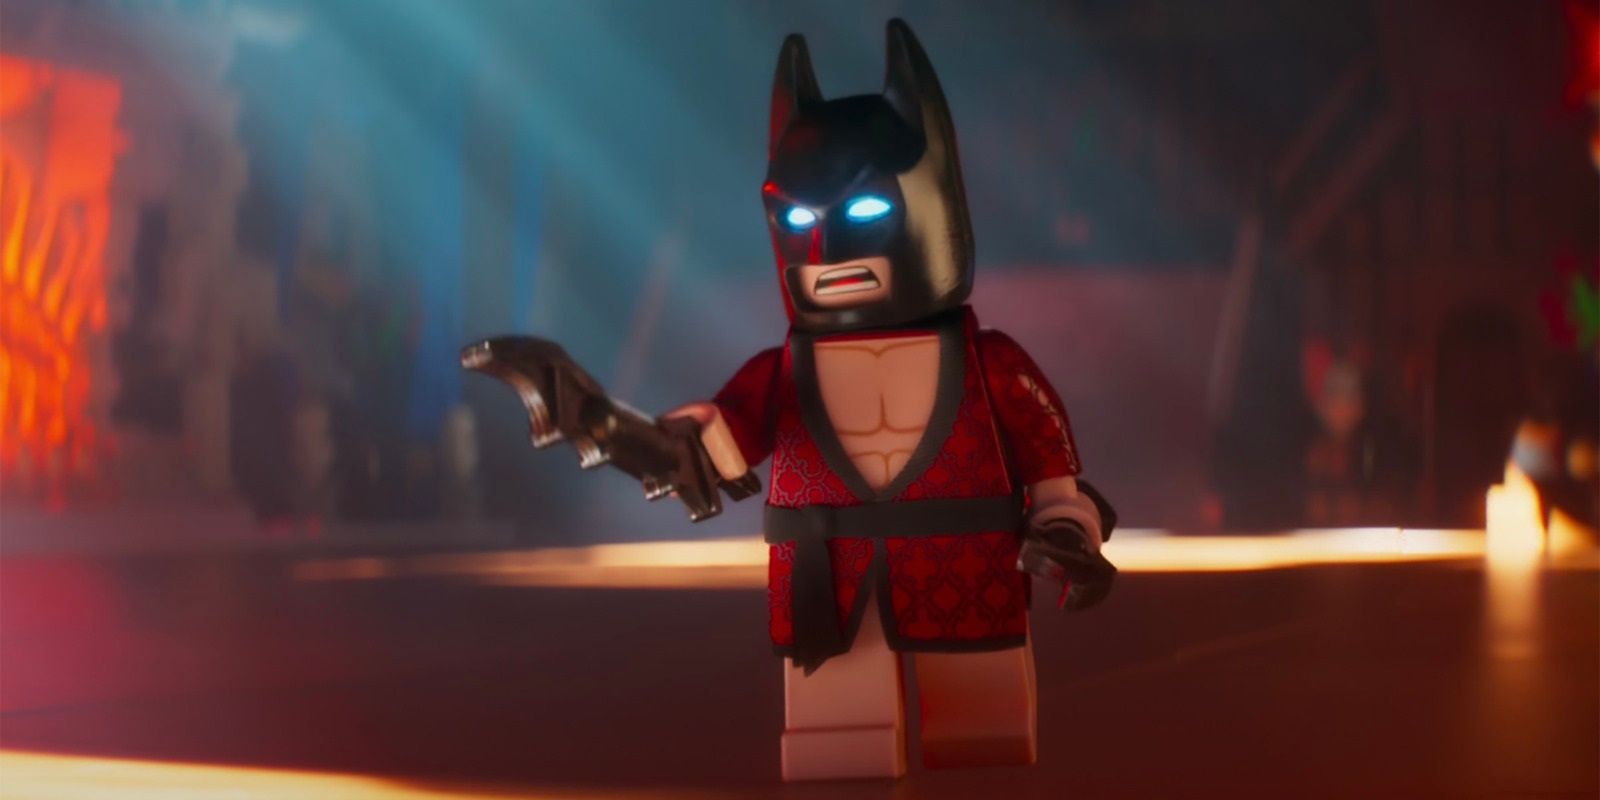 Batman in a bathrobe in The Lego Batman Movie